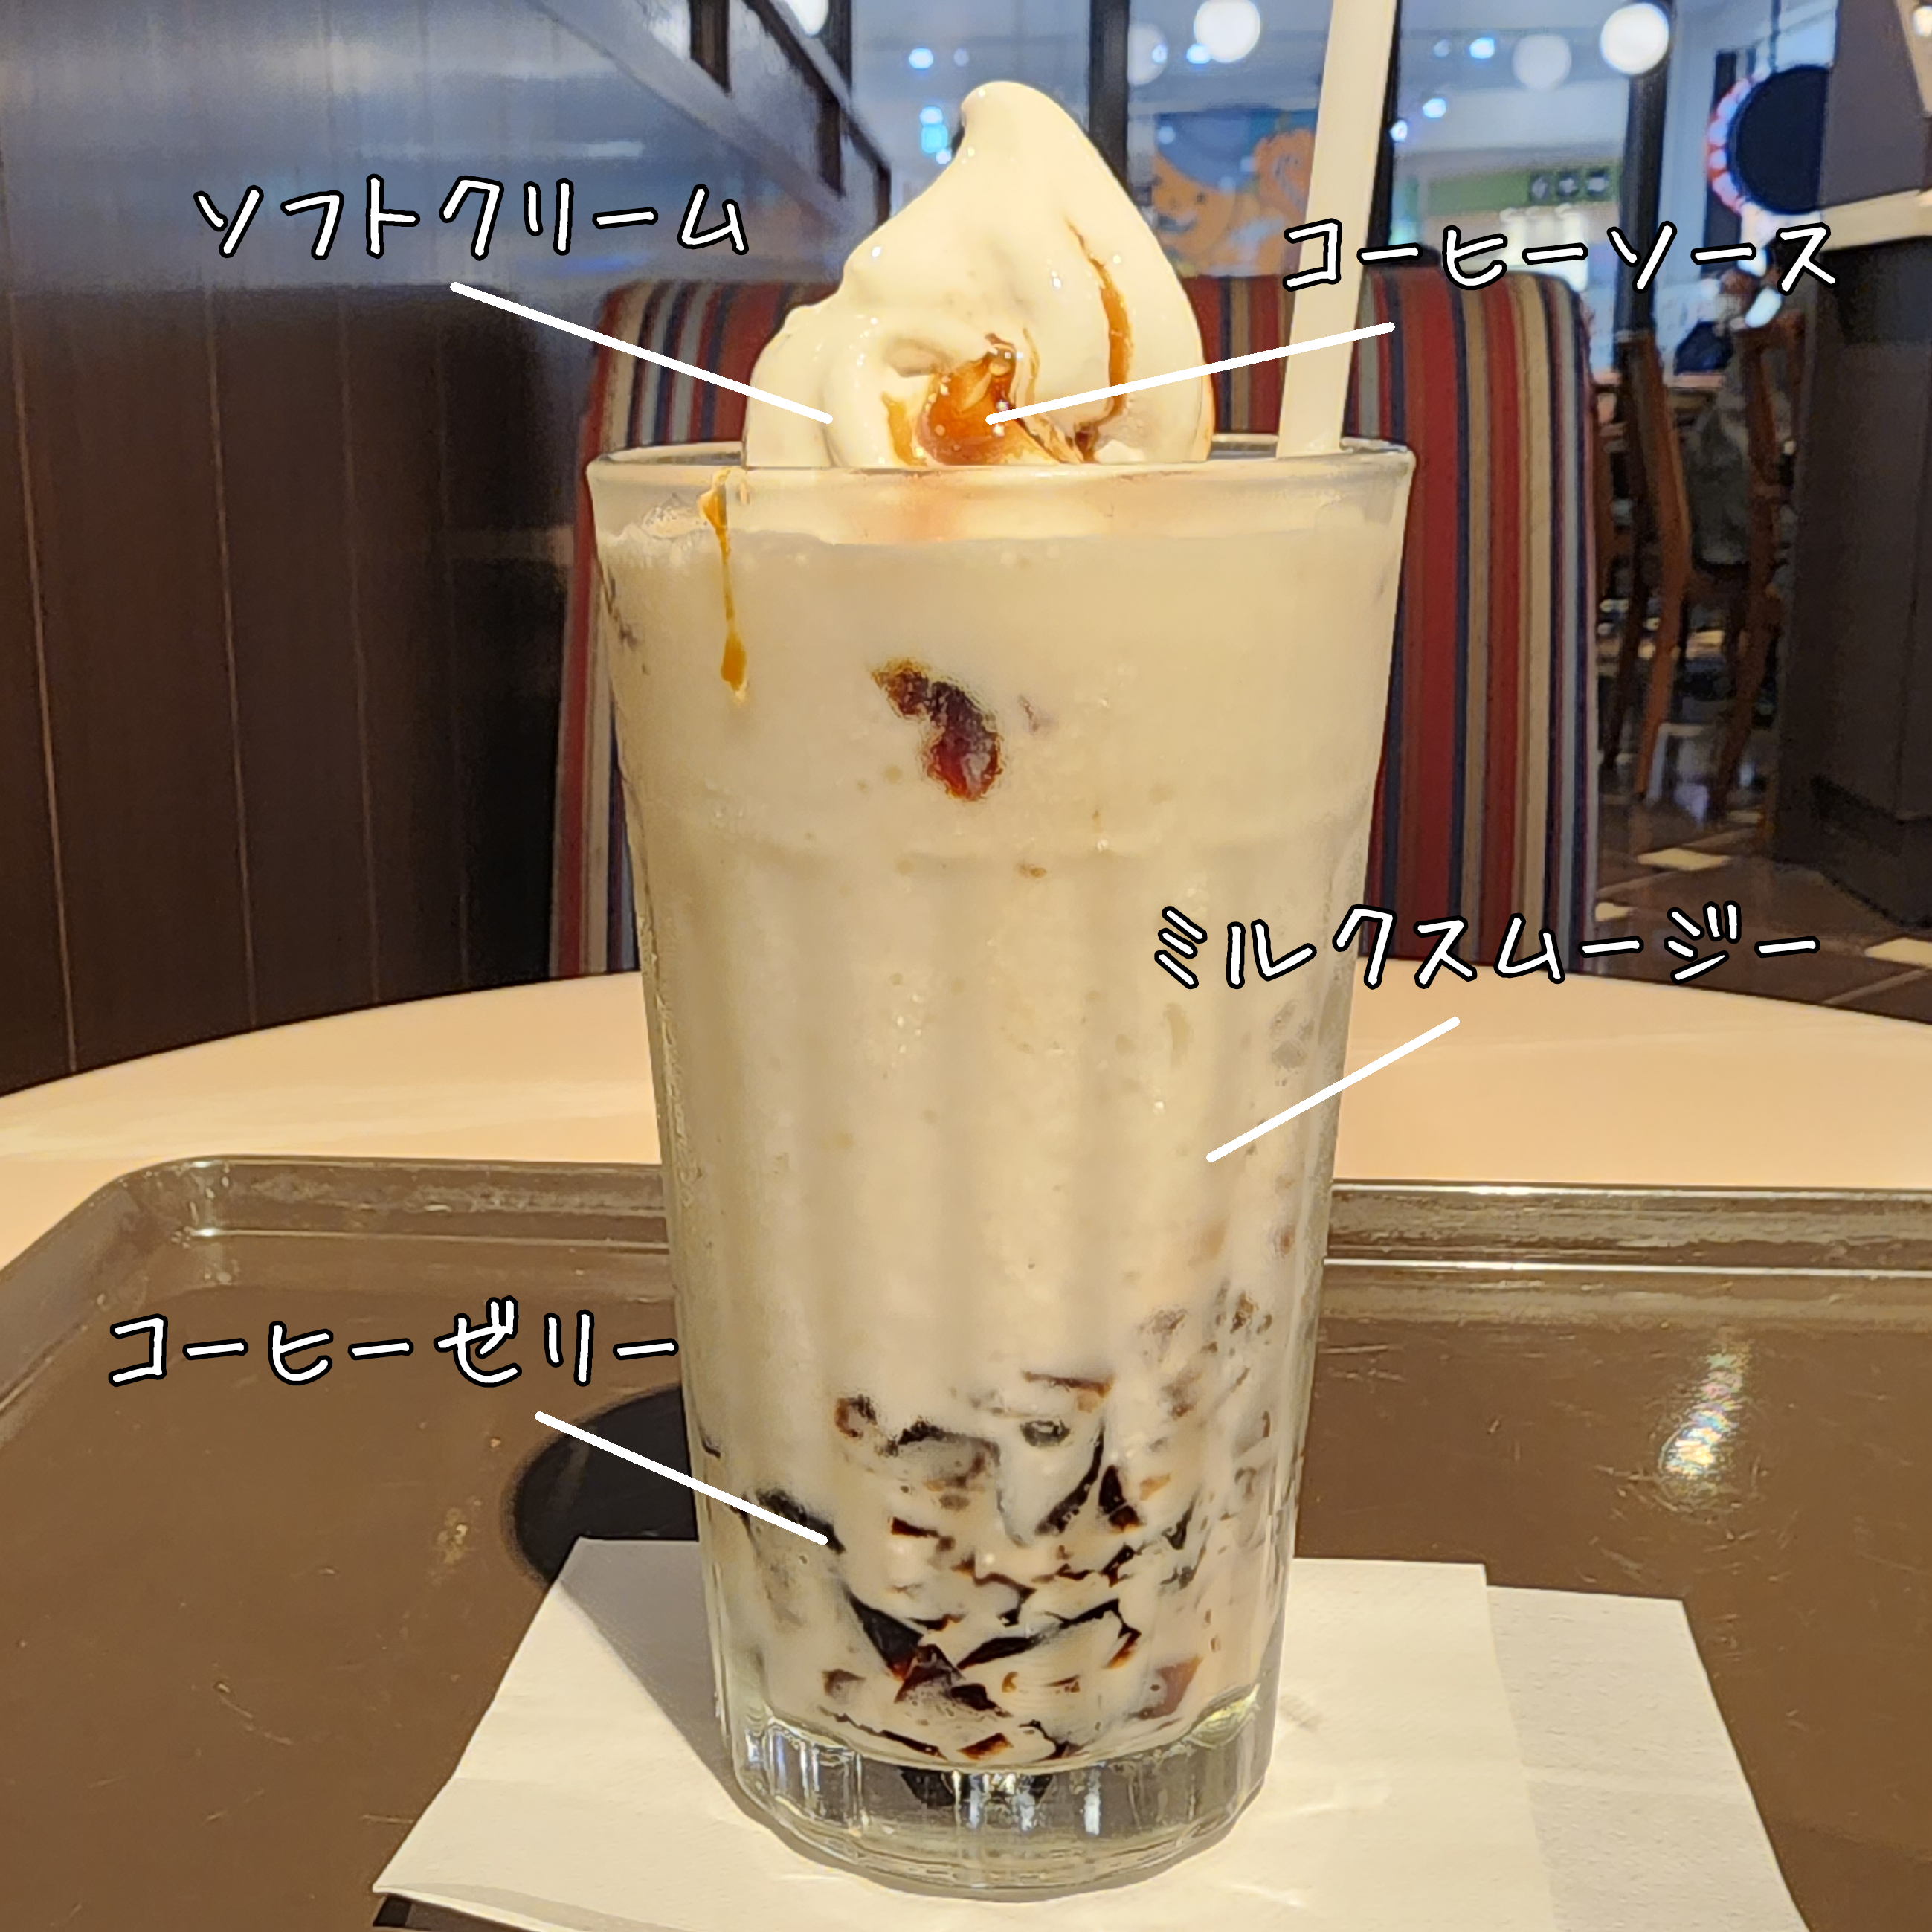 サンマルクカフェのおすすめドリンク「コーヒーゼリーパフェスムージーwith北海道ミルクソフト」